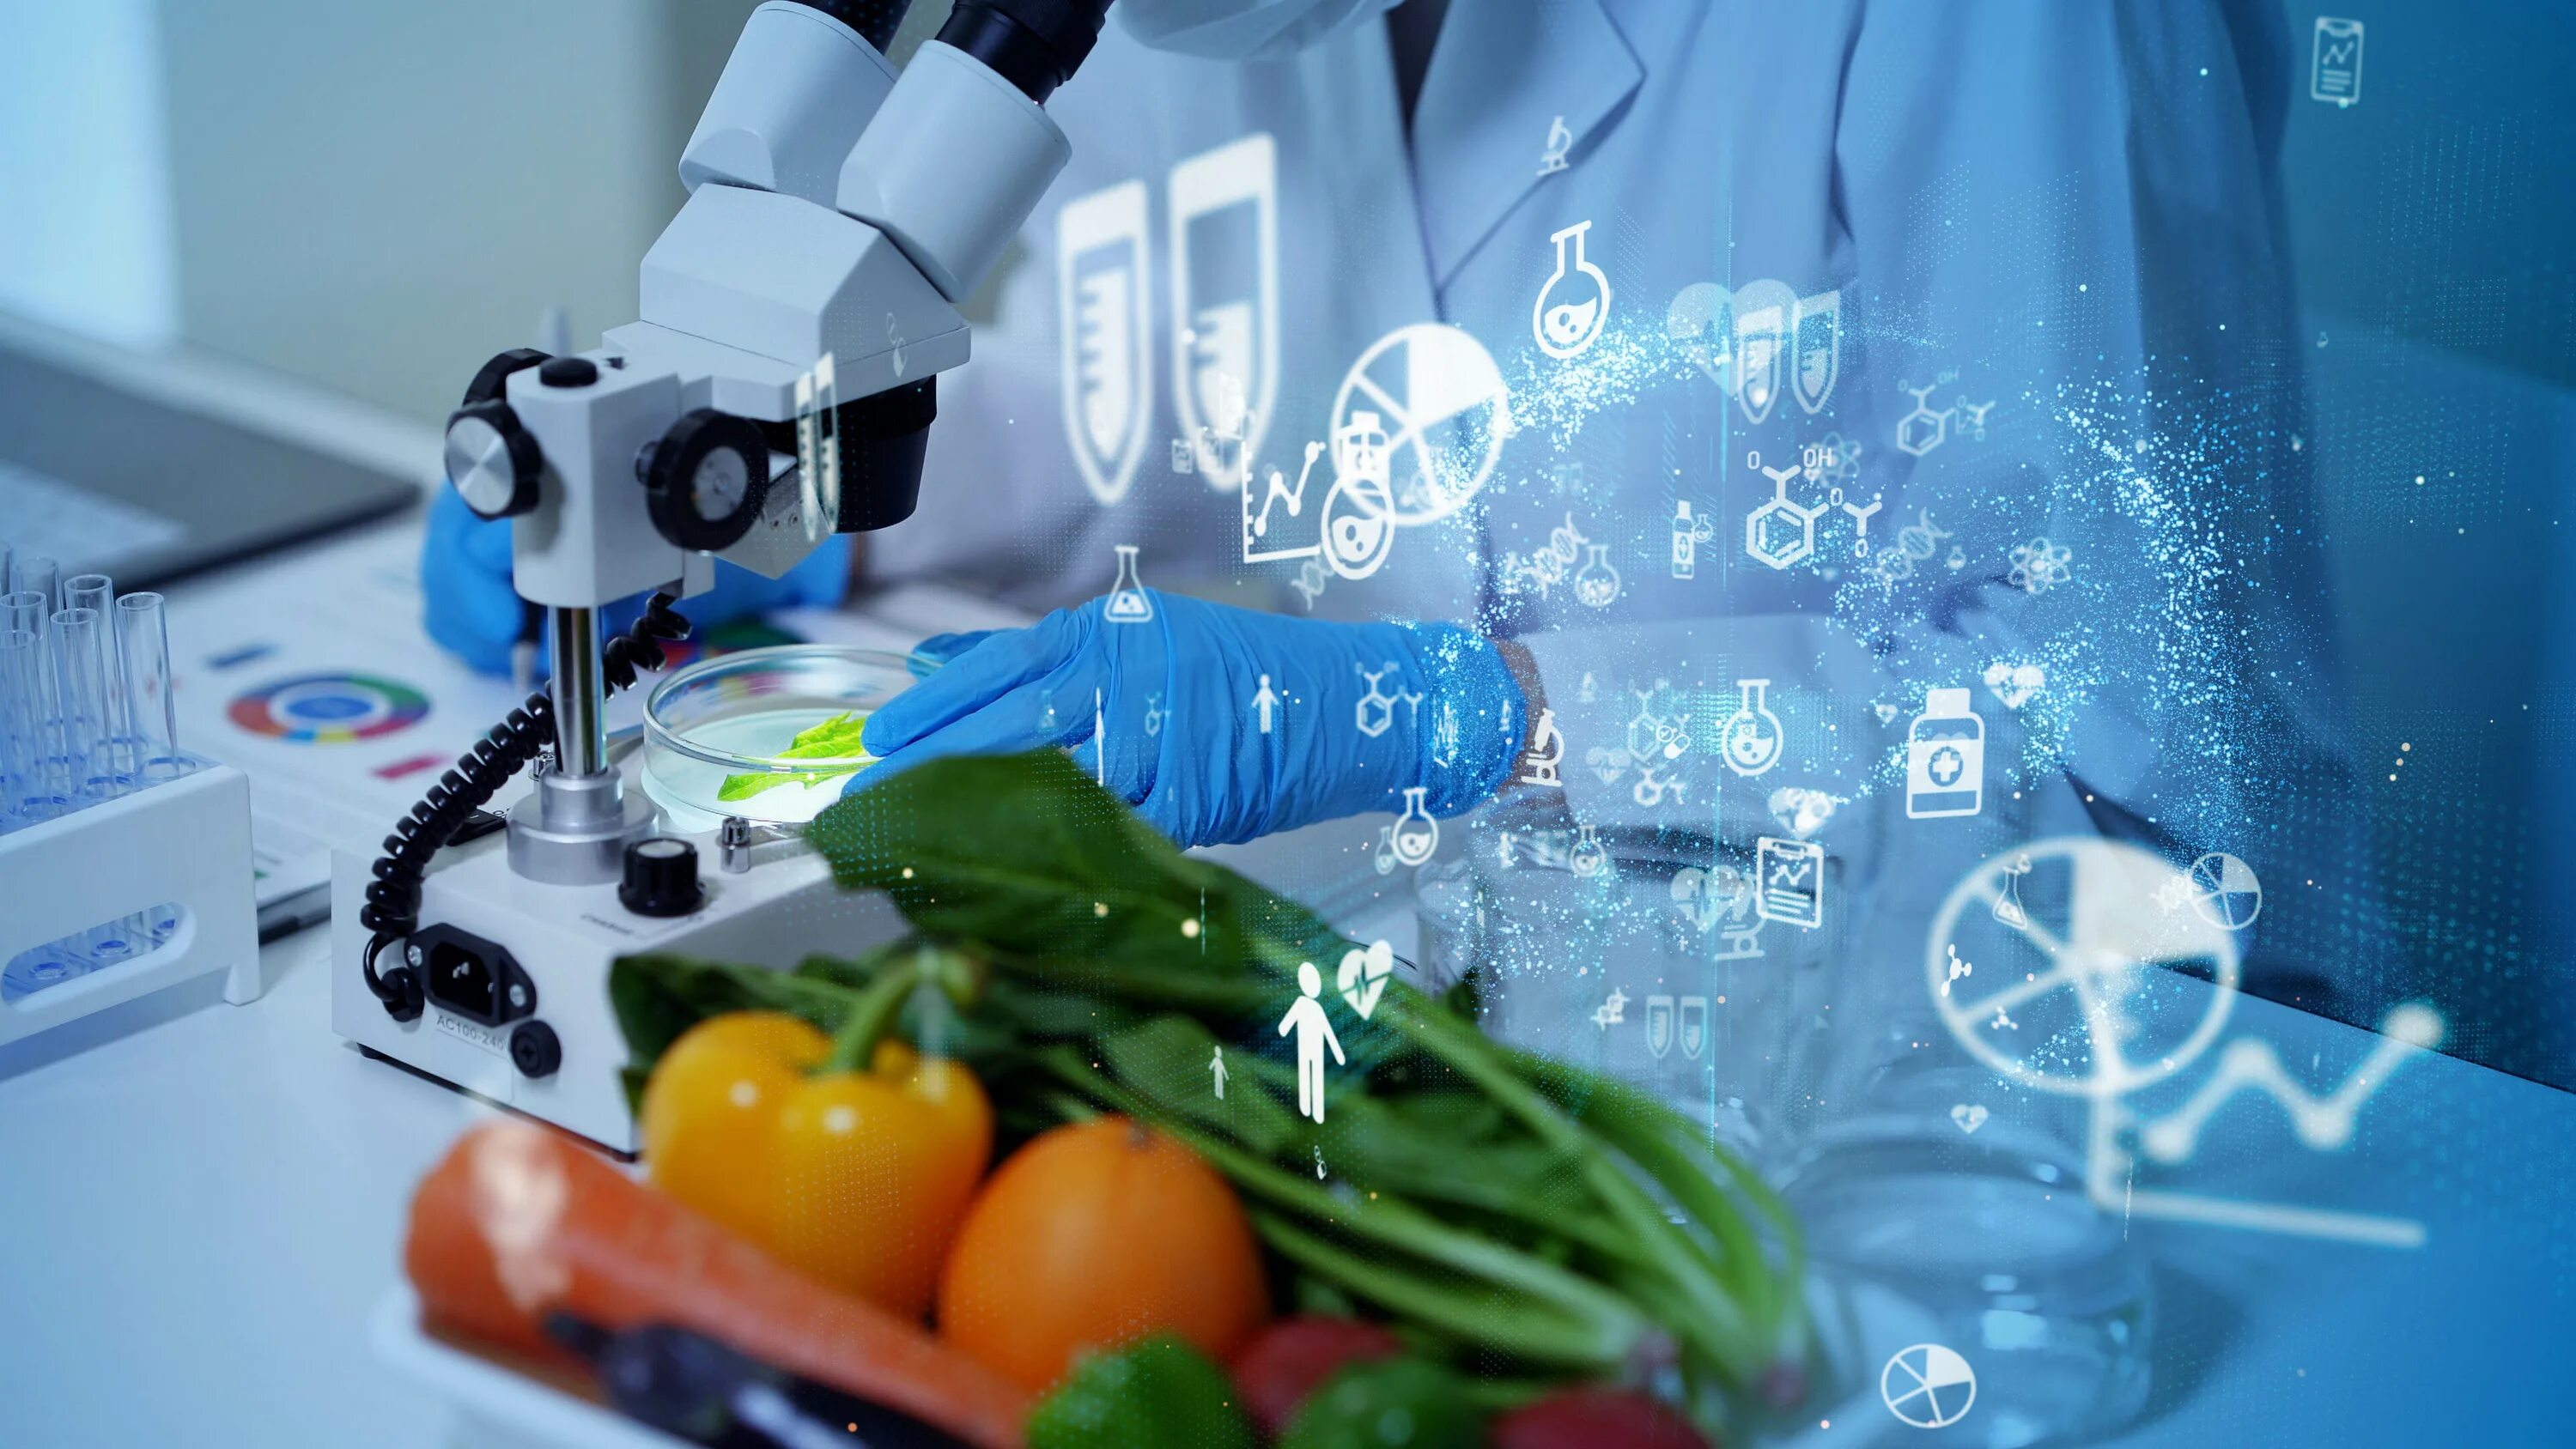 Биотехнологии в промышленности. Биотехнология пищевых продуктов. Биотехнологии в пищевой промышленности. Пищевая биотехнология. Новая технология пищевой промышленности